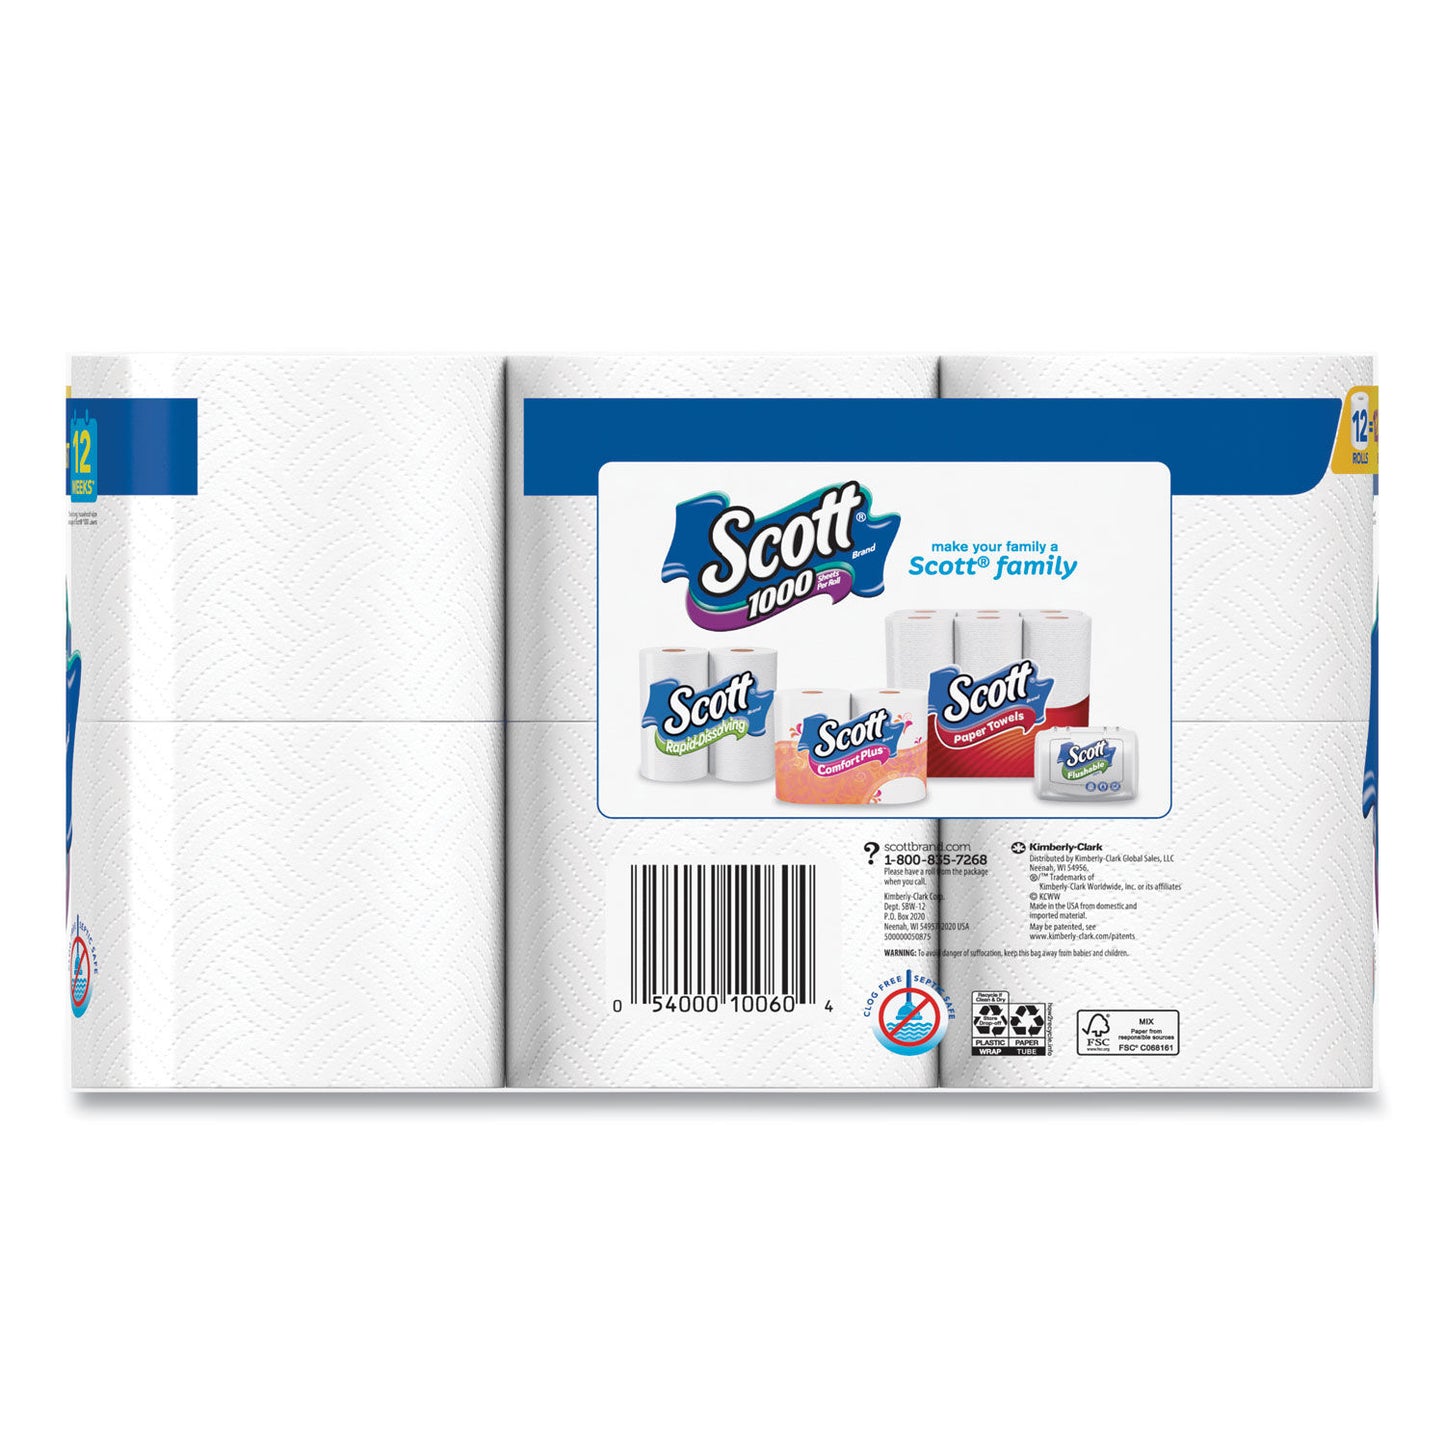 Scott Toilet Tissue Paper 1 Ply 1000 Sheets White (48 Rolls) 10060